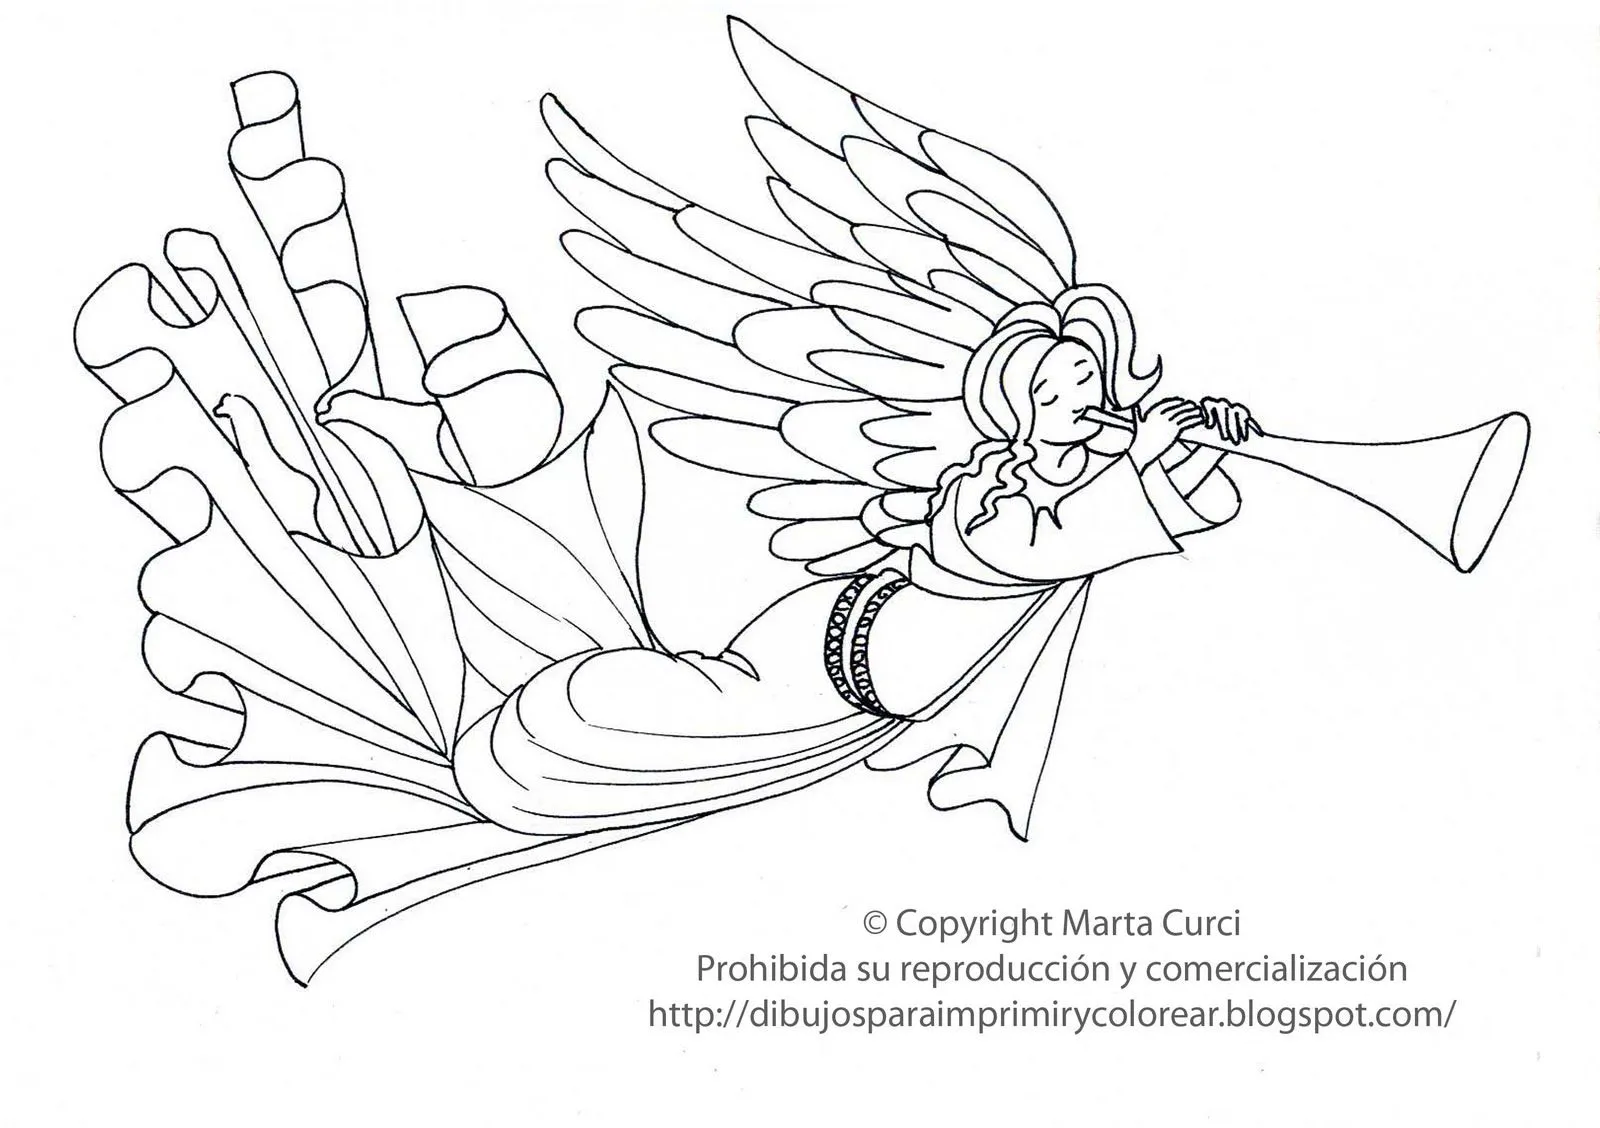 para imprimir y colorear gratis para niños: Dibujo de un ángel para ...